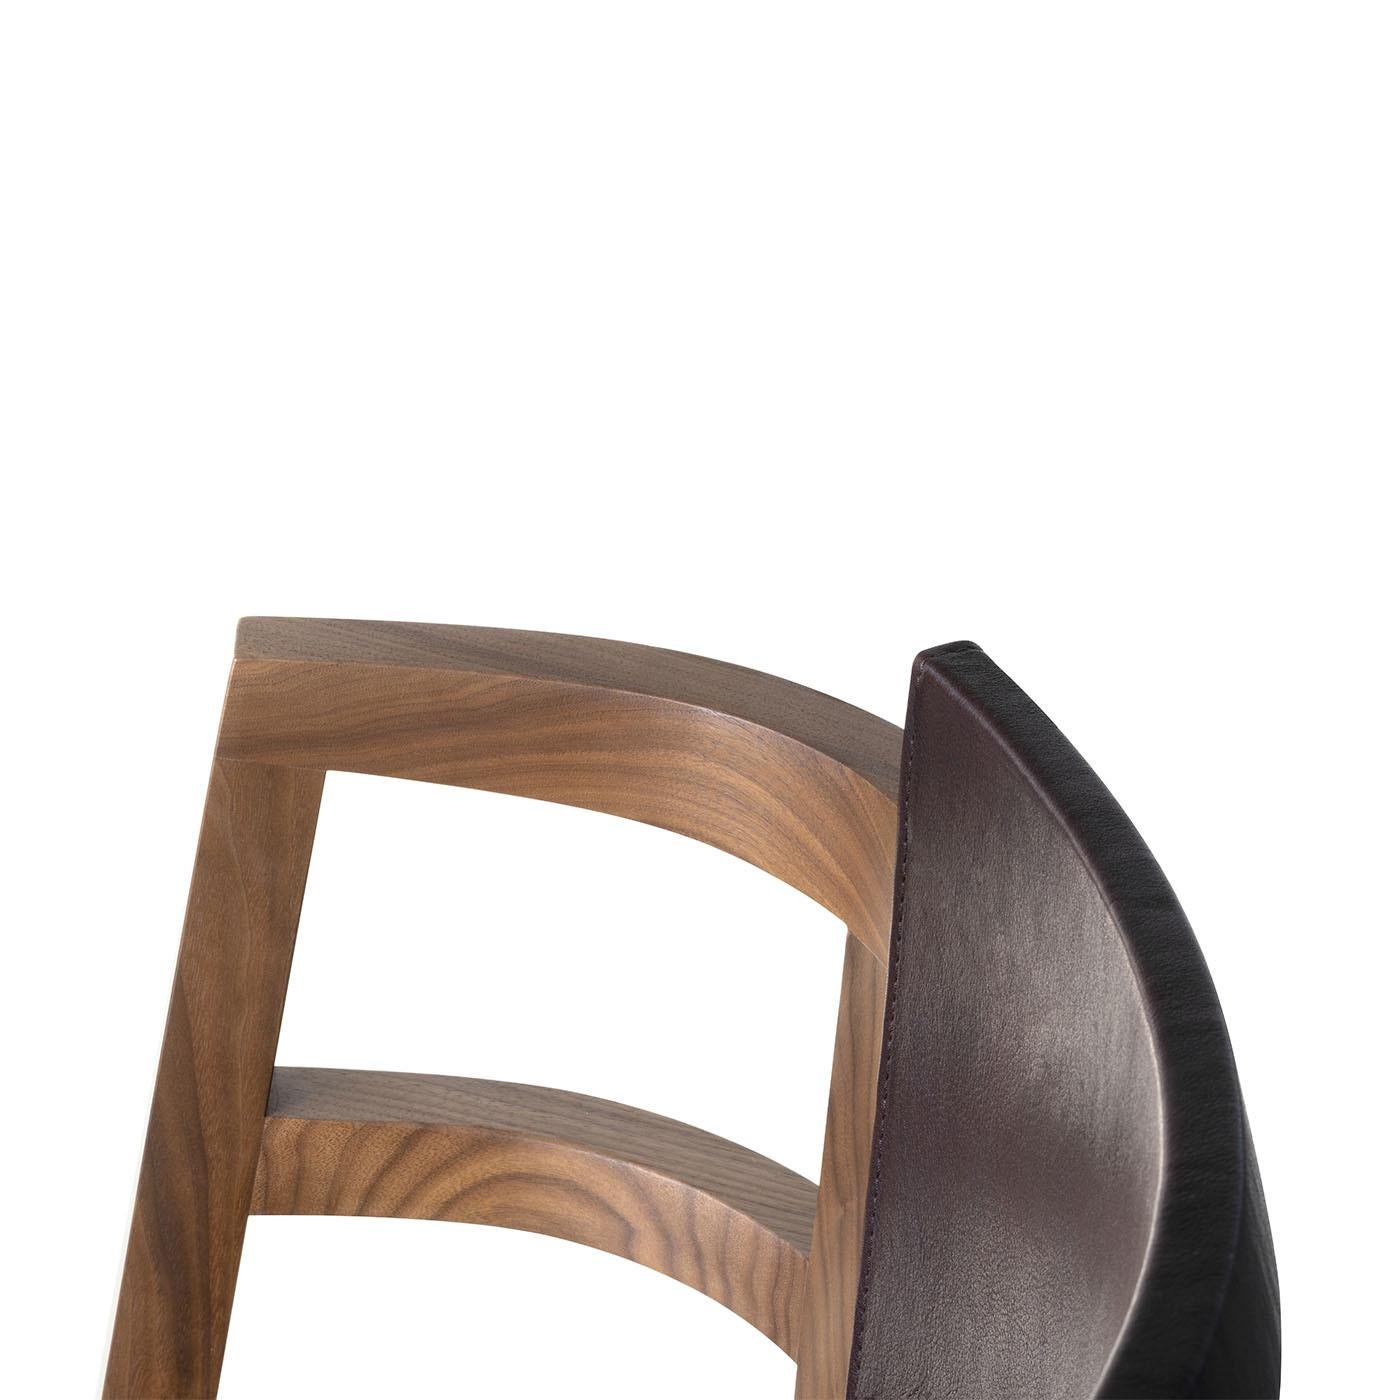 Der kleine Sessel Dama wurde von Enrico Tonucci entworfen und zeichnet sich durch minimalistische Linien aus, die vom Bild einer in Krinoline gekleideten Dame inspiriert sind. Er ist aus massivem schwarzem Walnussholz gefertigt, Rückenlehne und